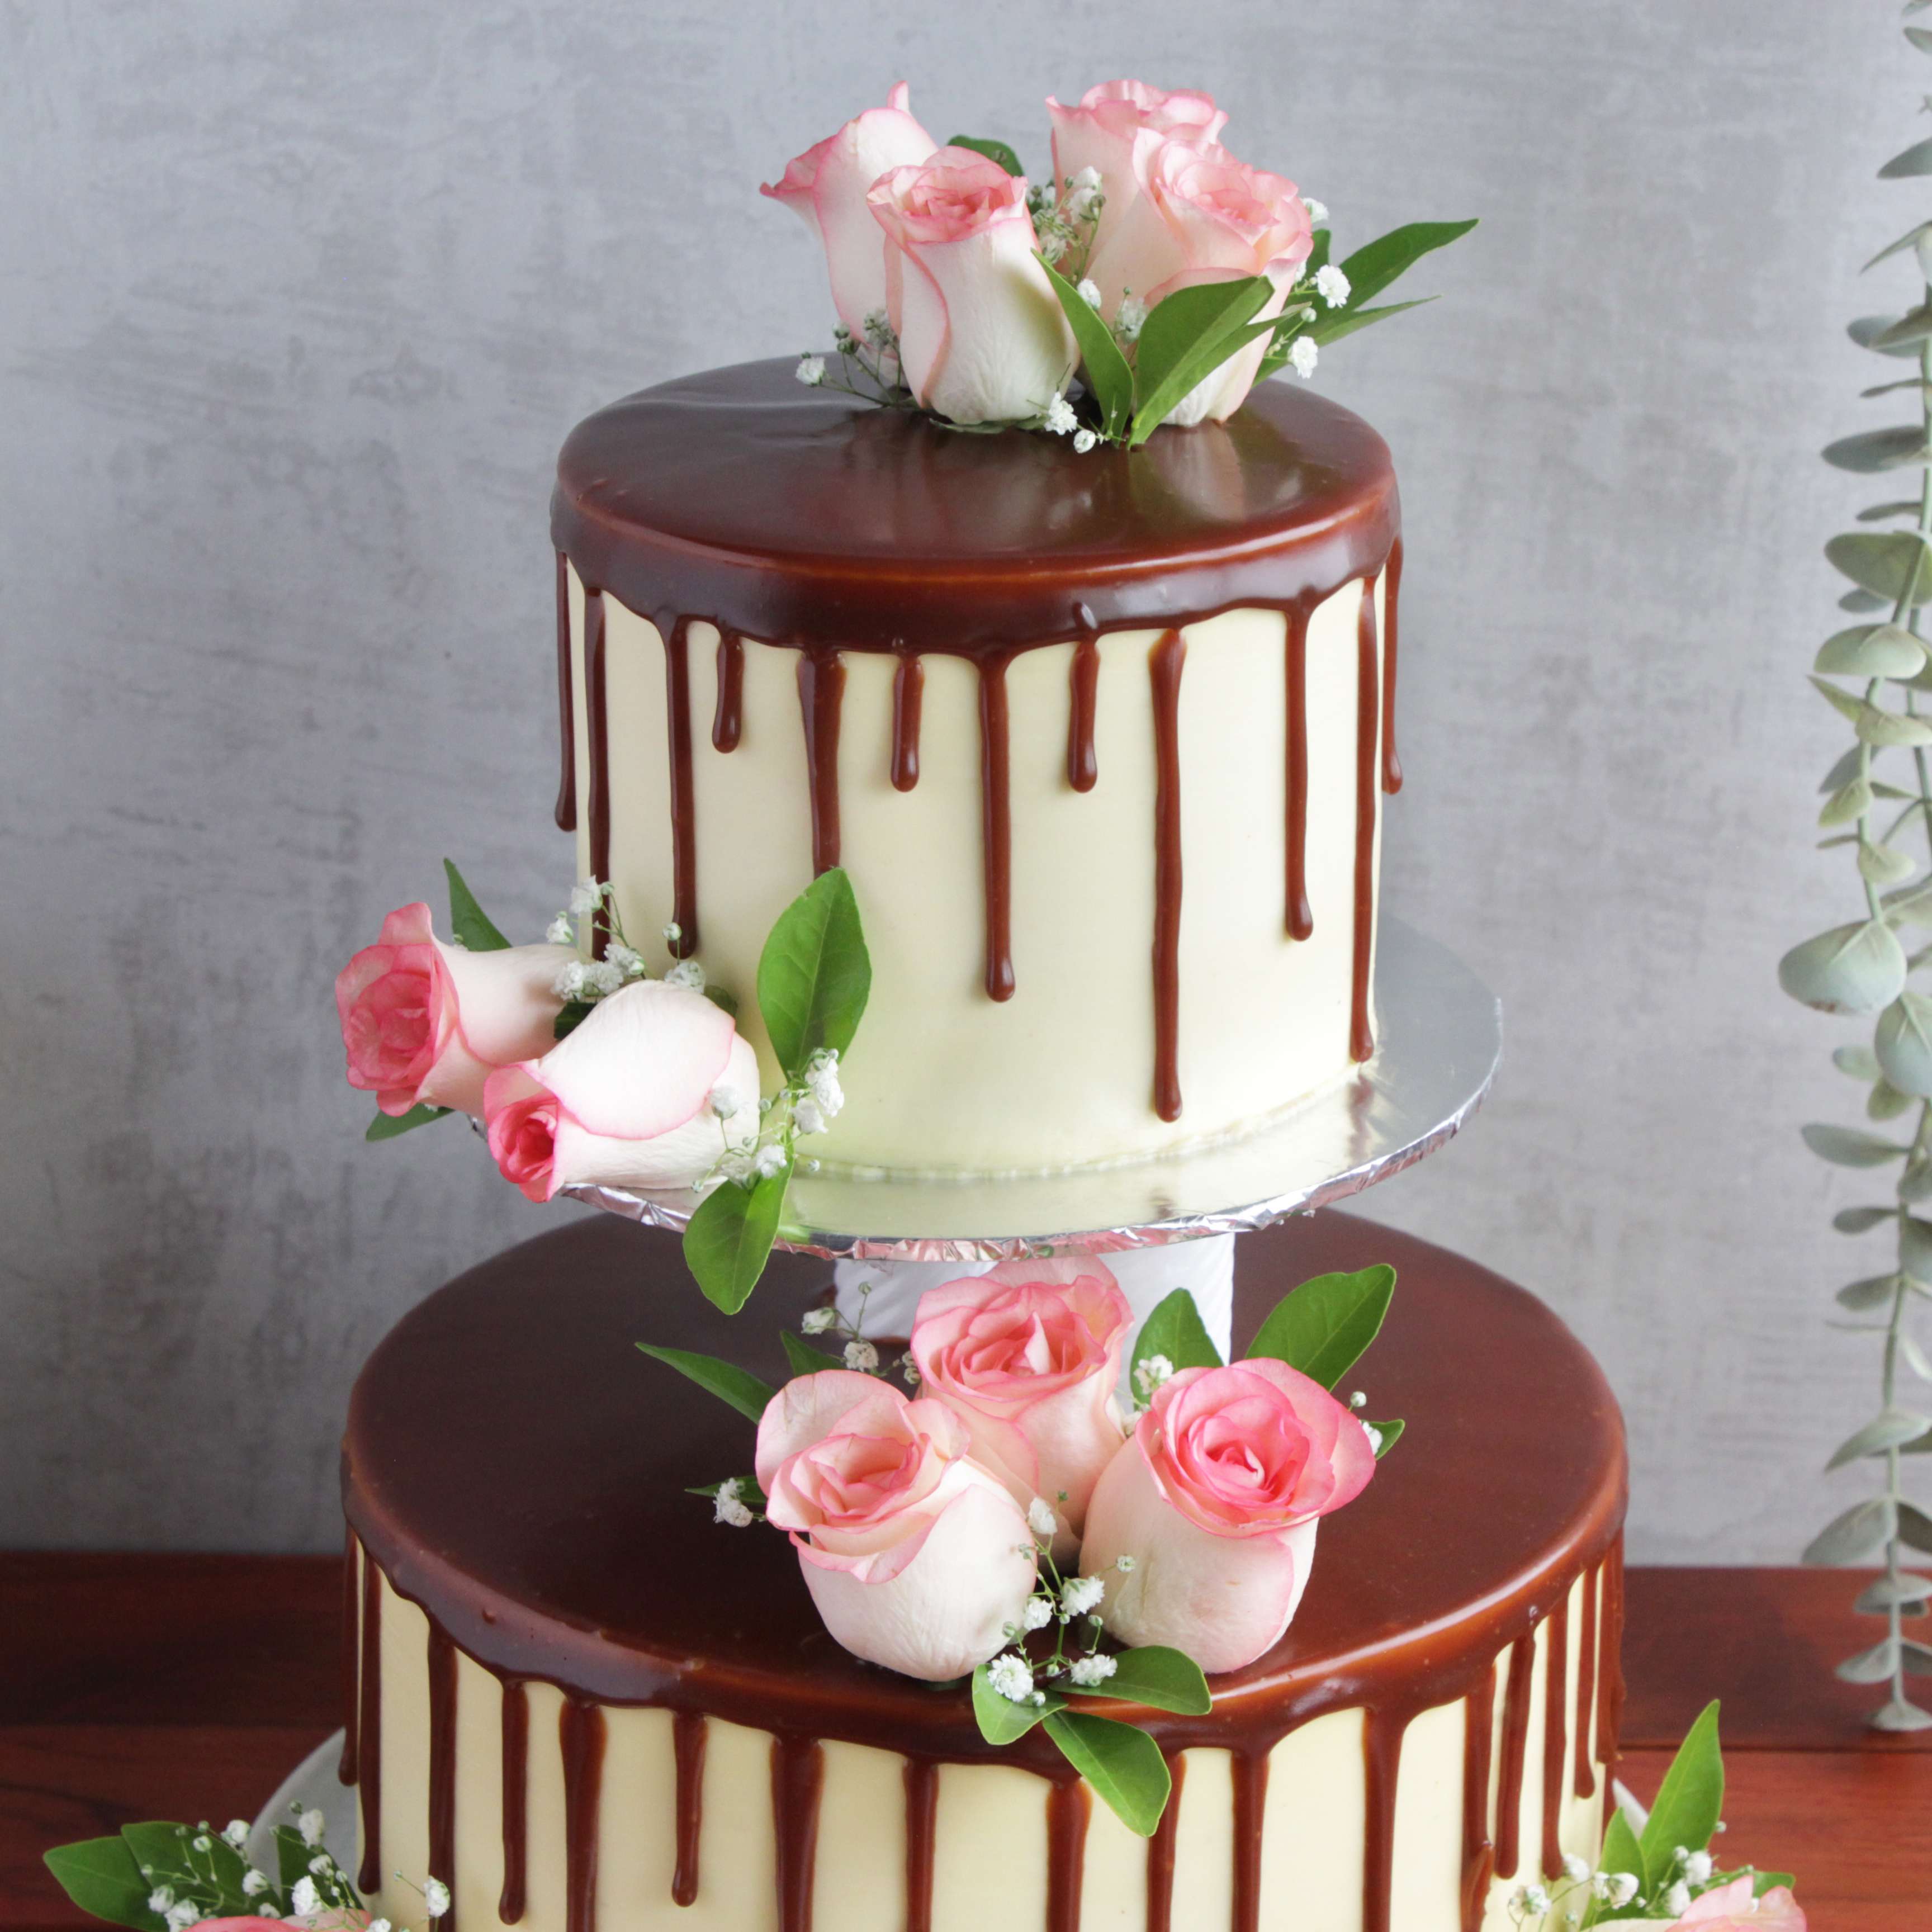 Ganache Wedding Cake - Decorated Cake by Sweet Scene - CakesDecor